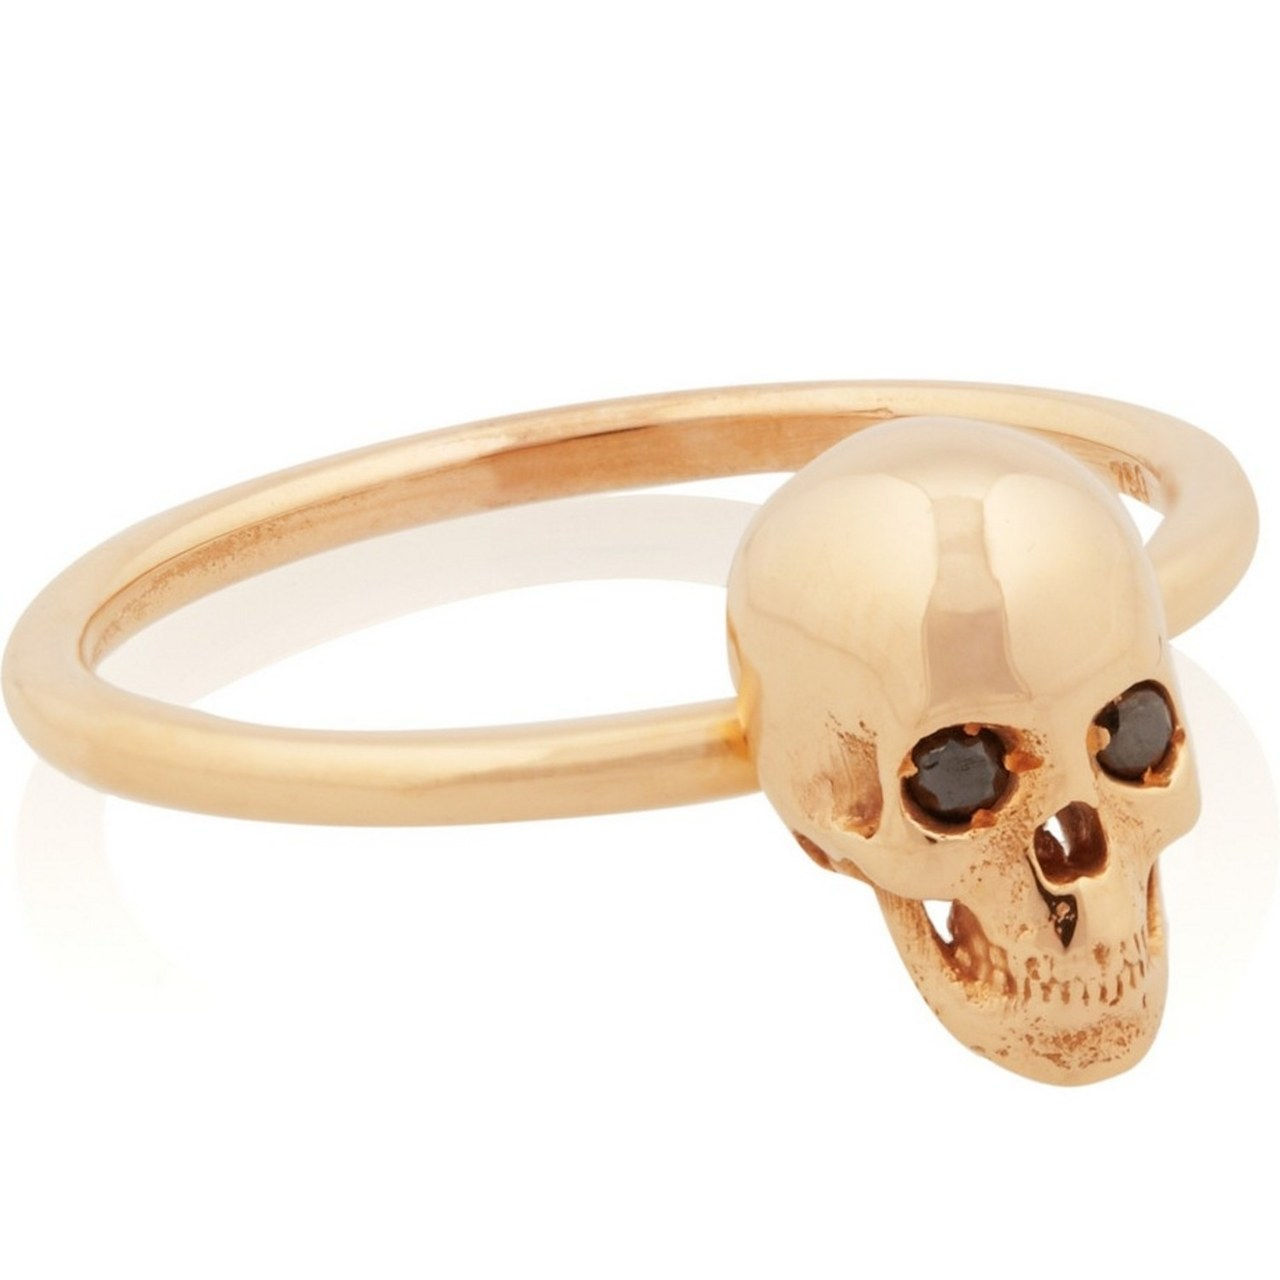 6 engagement rings inspired by kat von d black diamond skull 1218